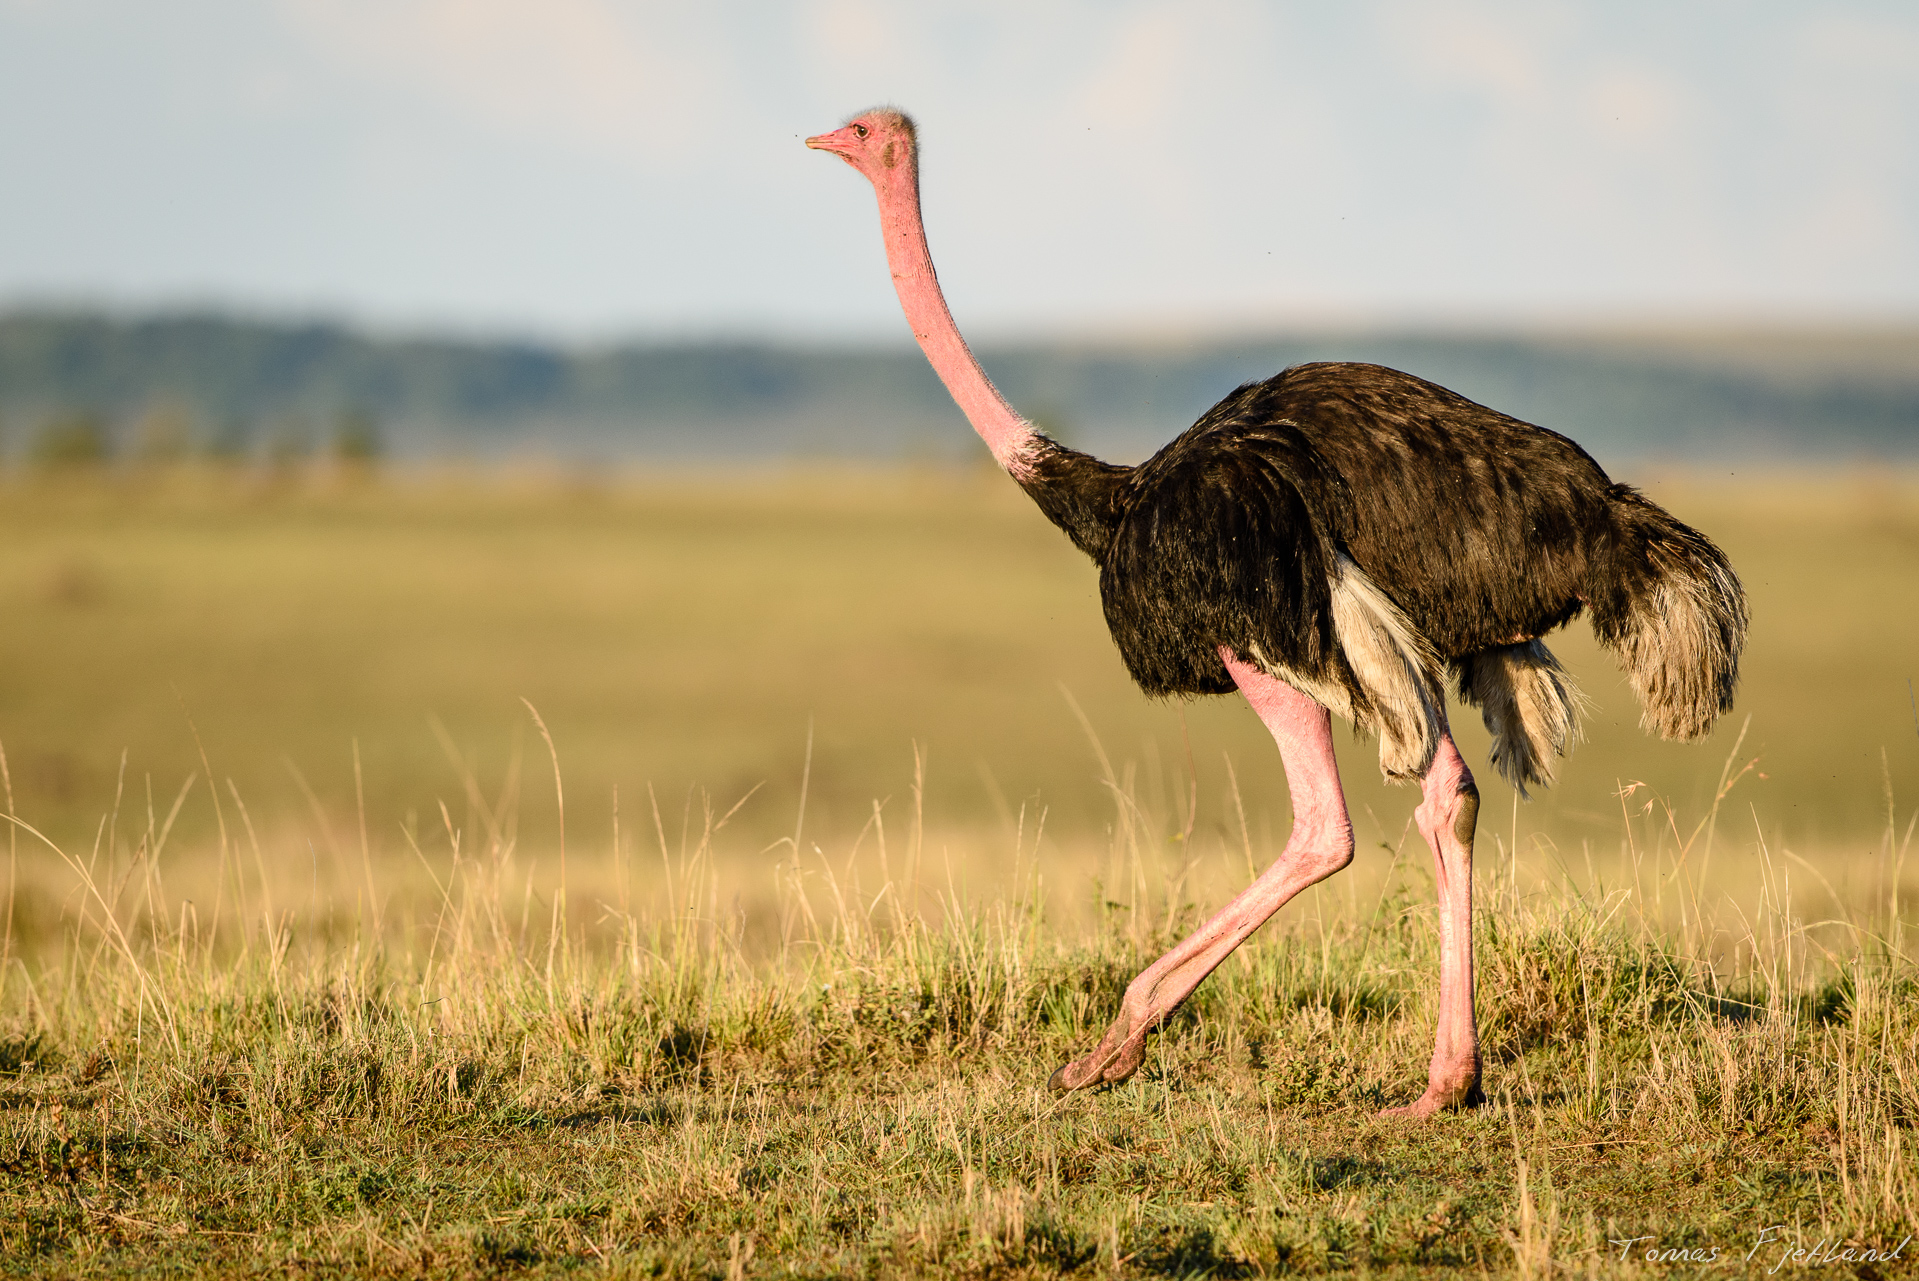 Not as common as in Samburu, a few ostriches still roam around in the Mara